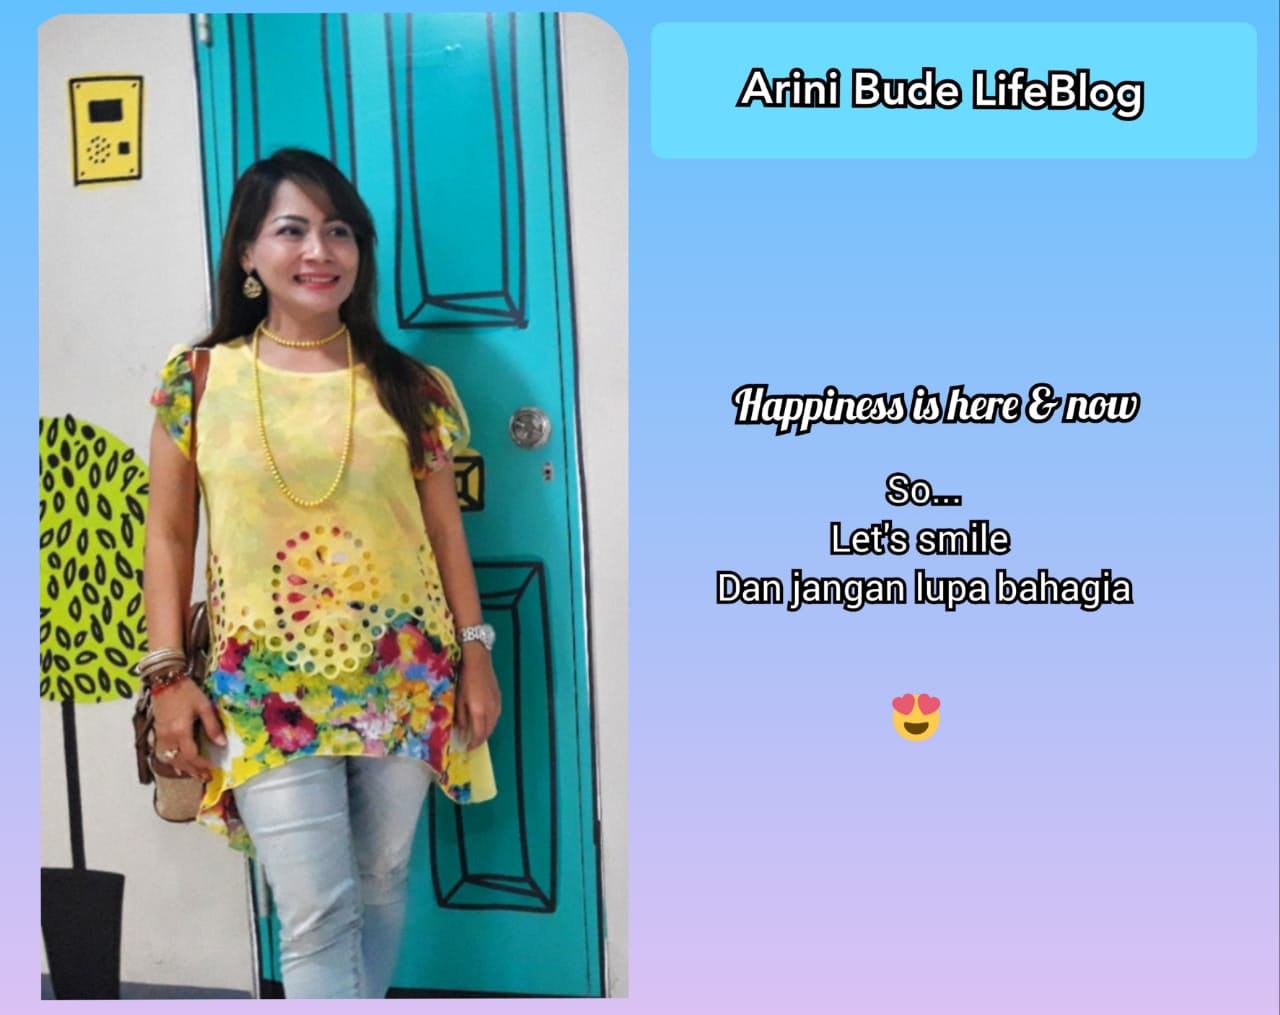 Arini Bude LifeBlog